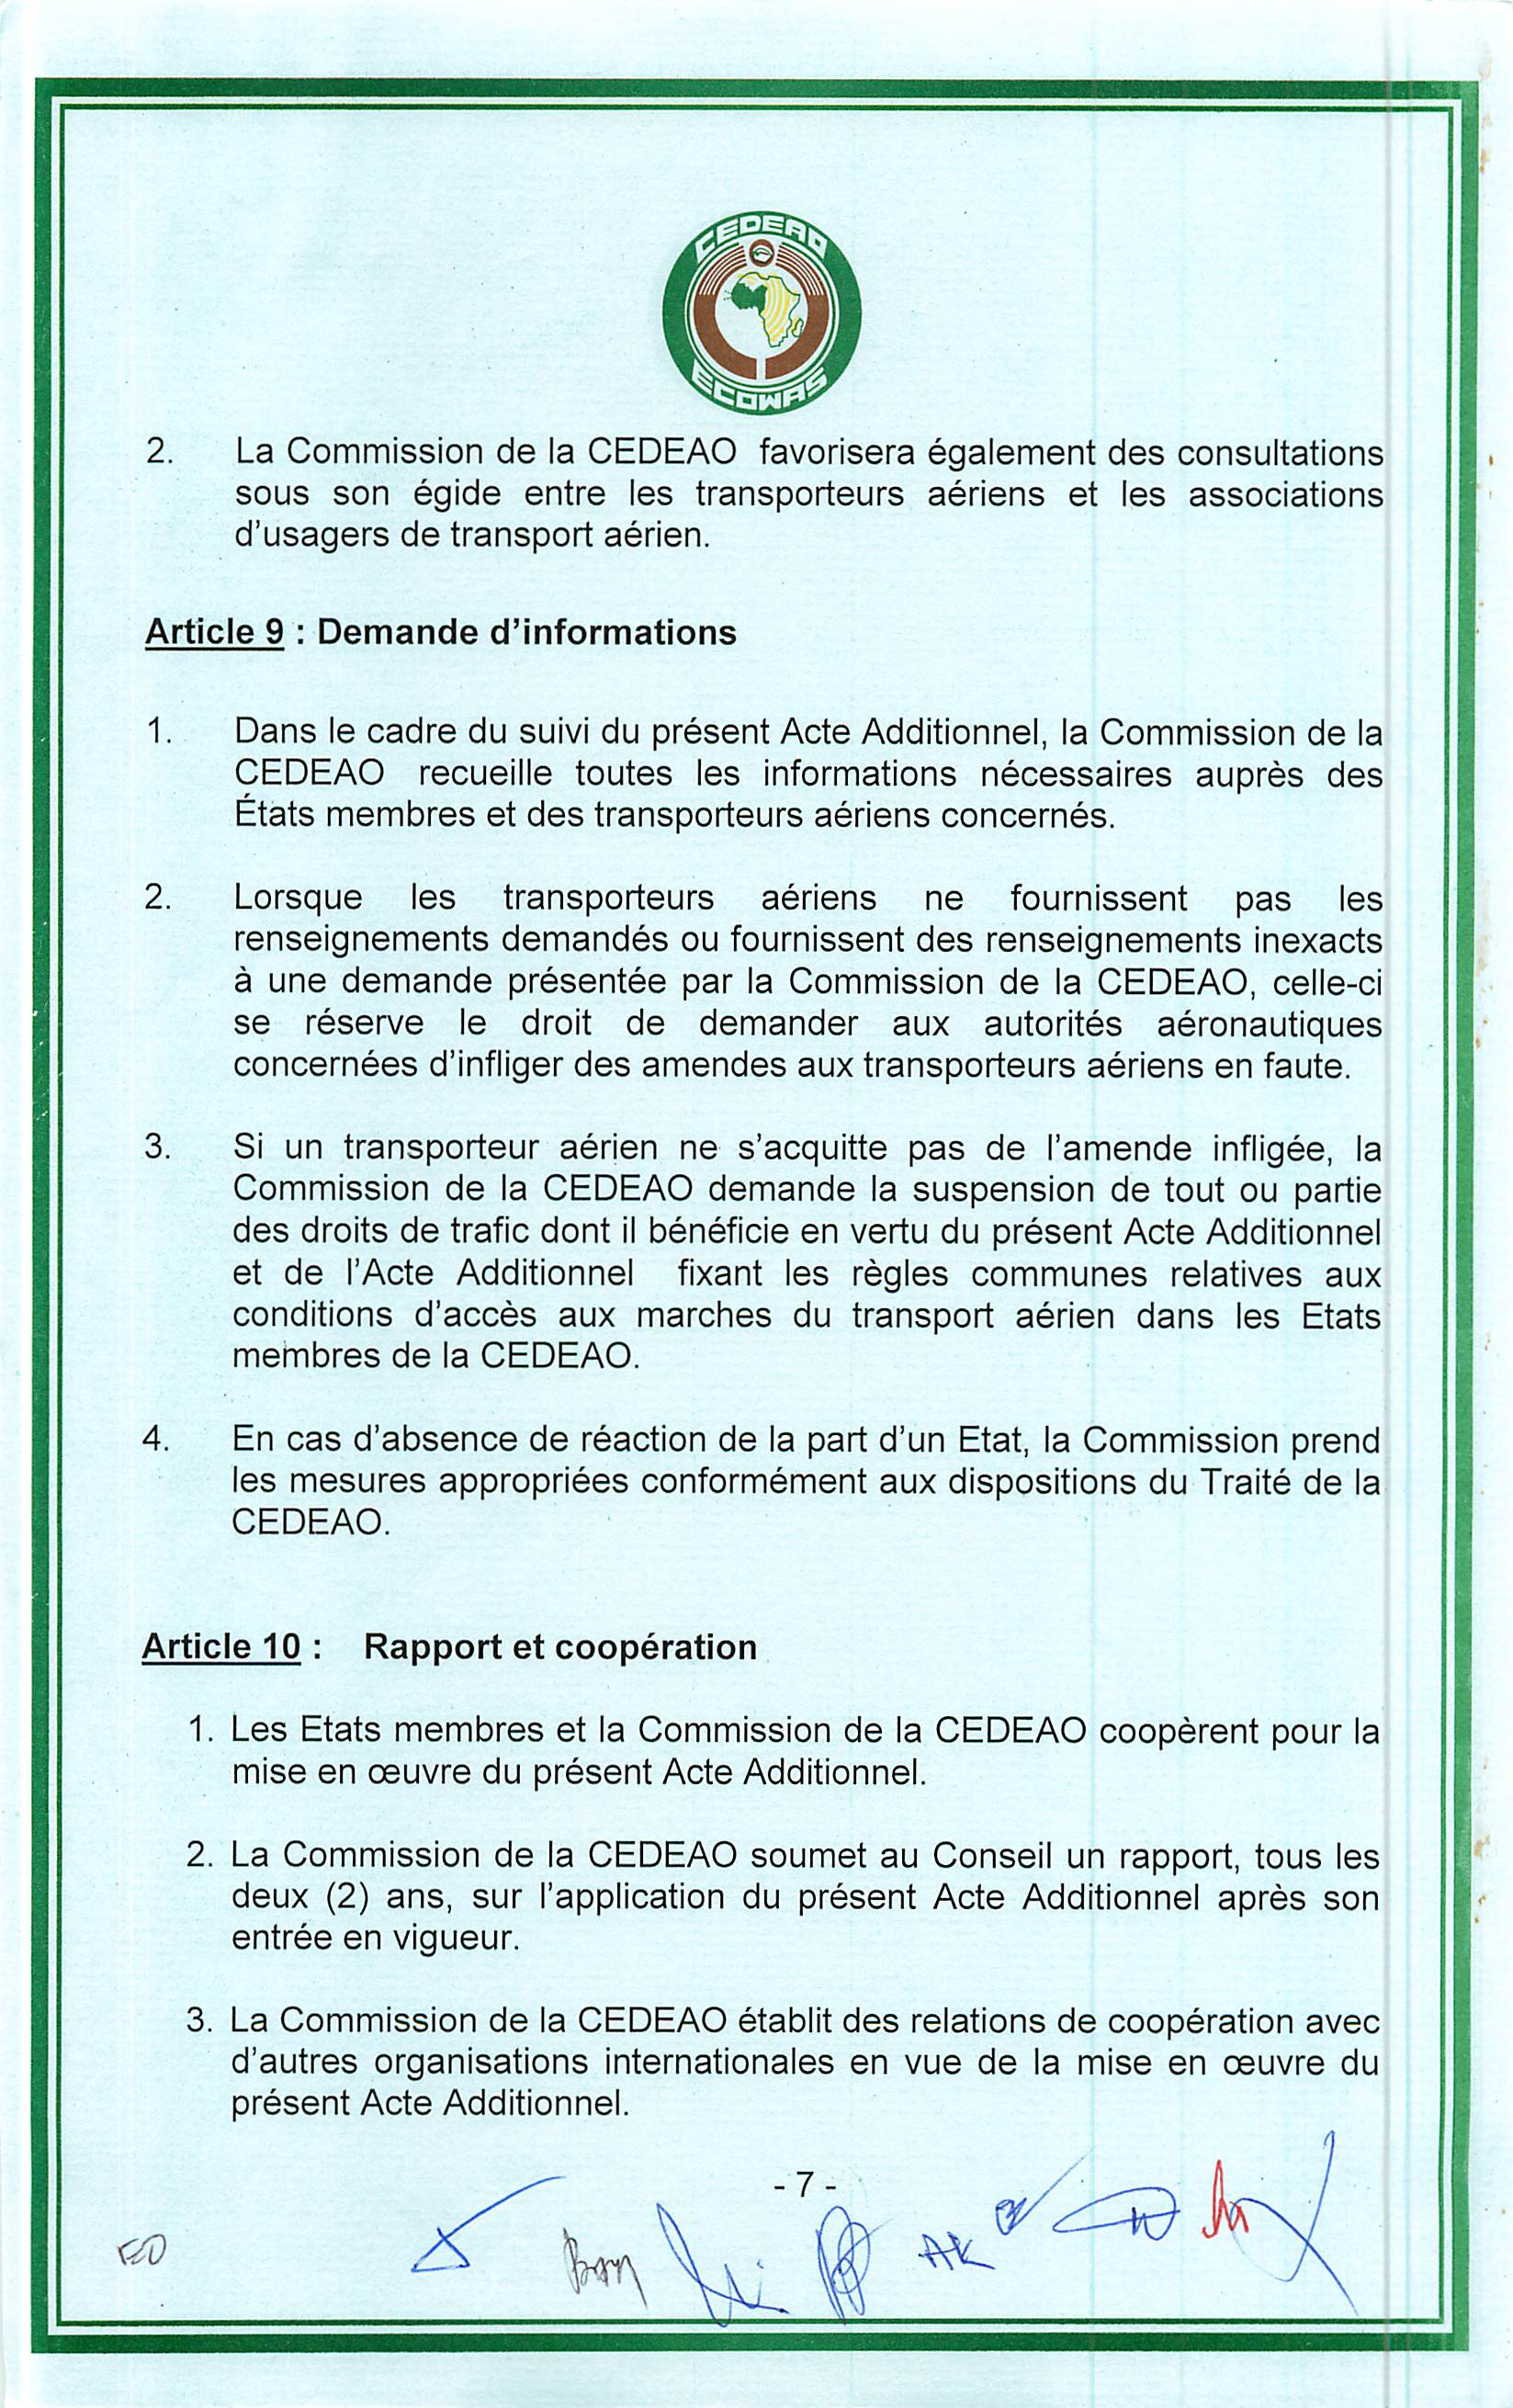 2. La Commission de la CEDEAO favorisera egalement des consultations sous son egide entre les transporteurs aeriens et les associations d'usagers de transport aerien.